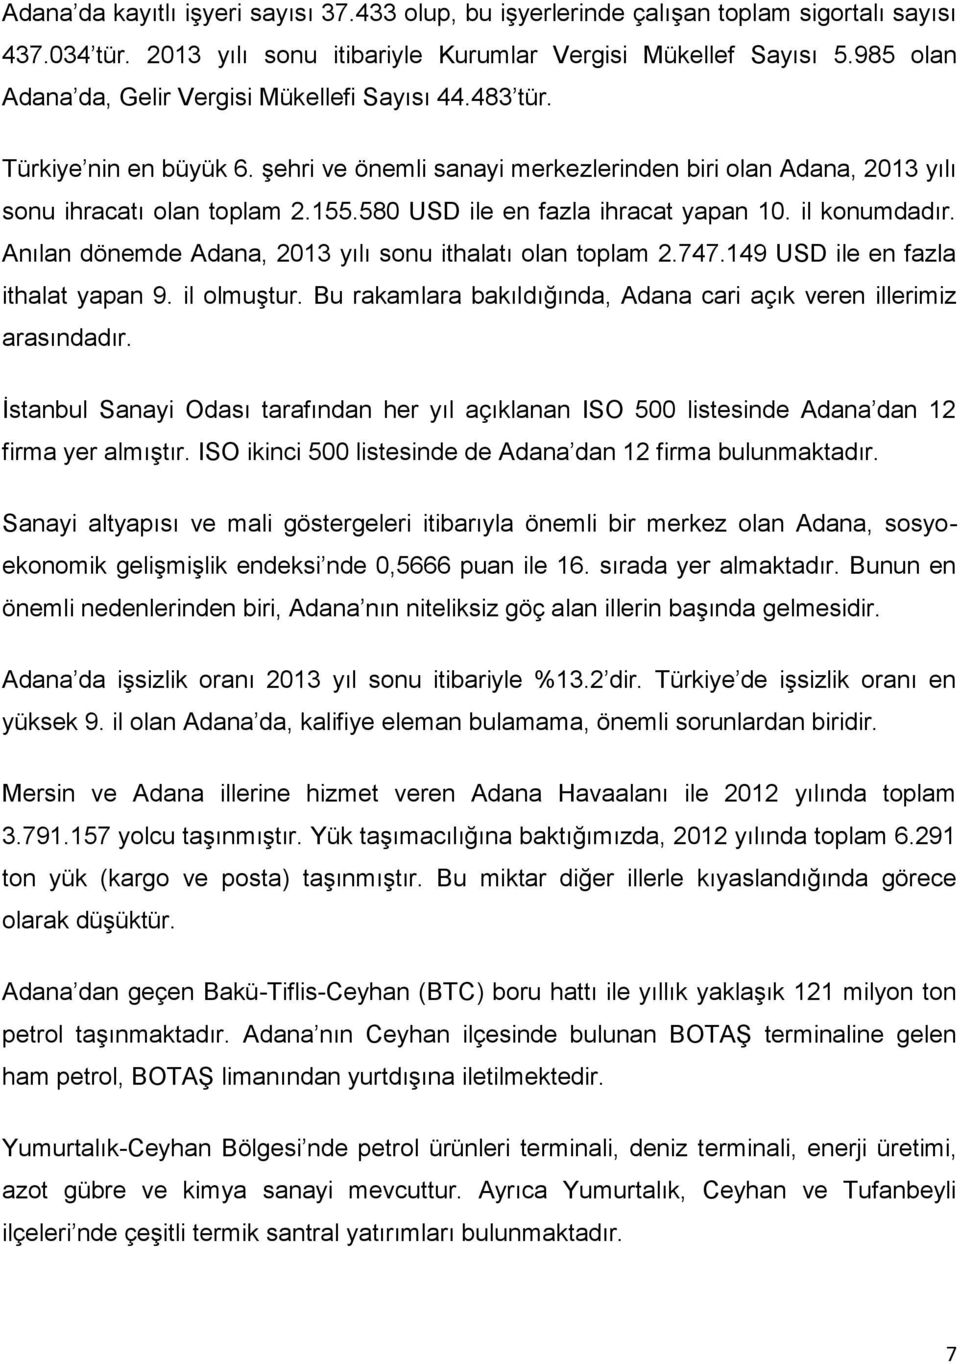 580 USD ile en fazla ihracat yapan 10. il konumdadır. Anılan dönemde Adana, 2013 yılı sonu ithalatı olan toplam 2.747.149 USD ile en fazla ithalat yapan 9. il olmuştur.